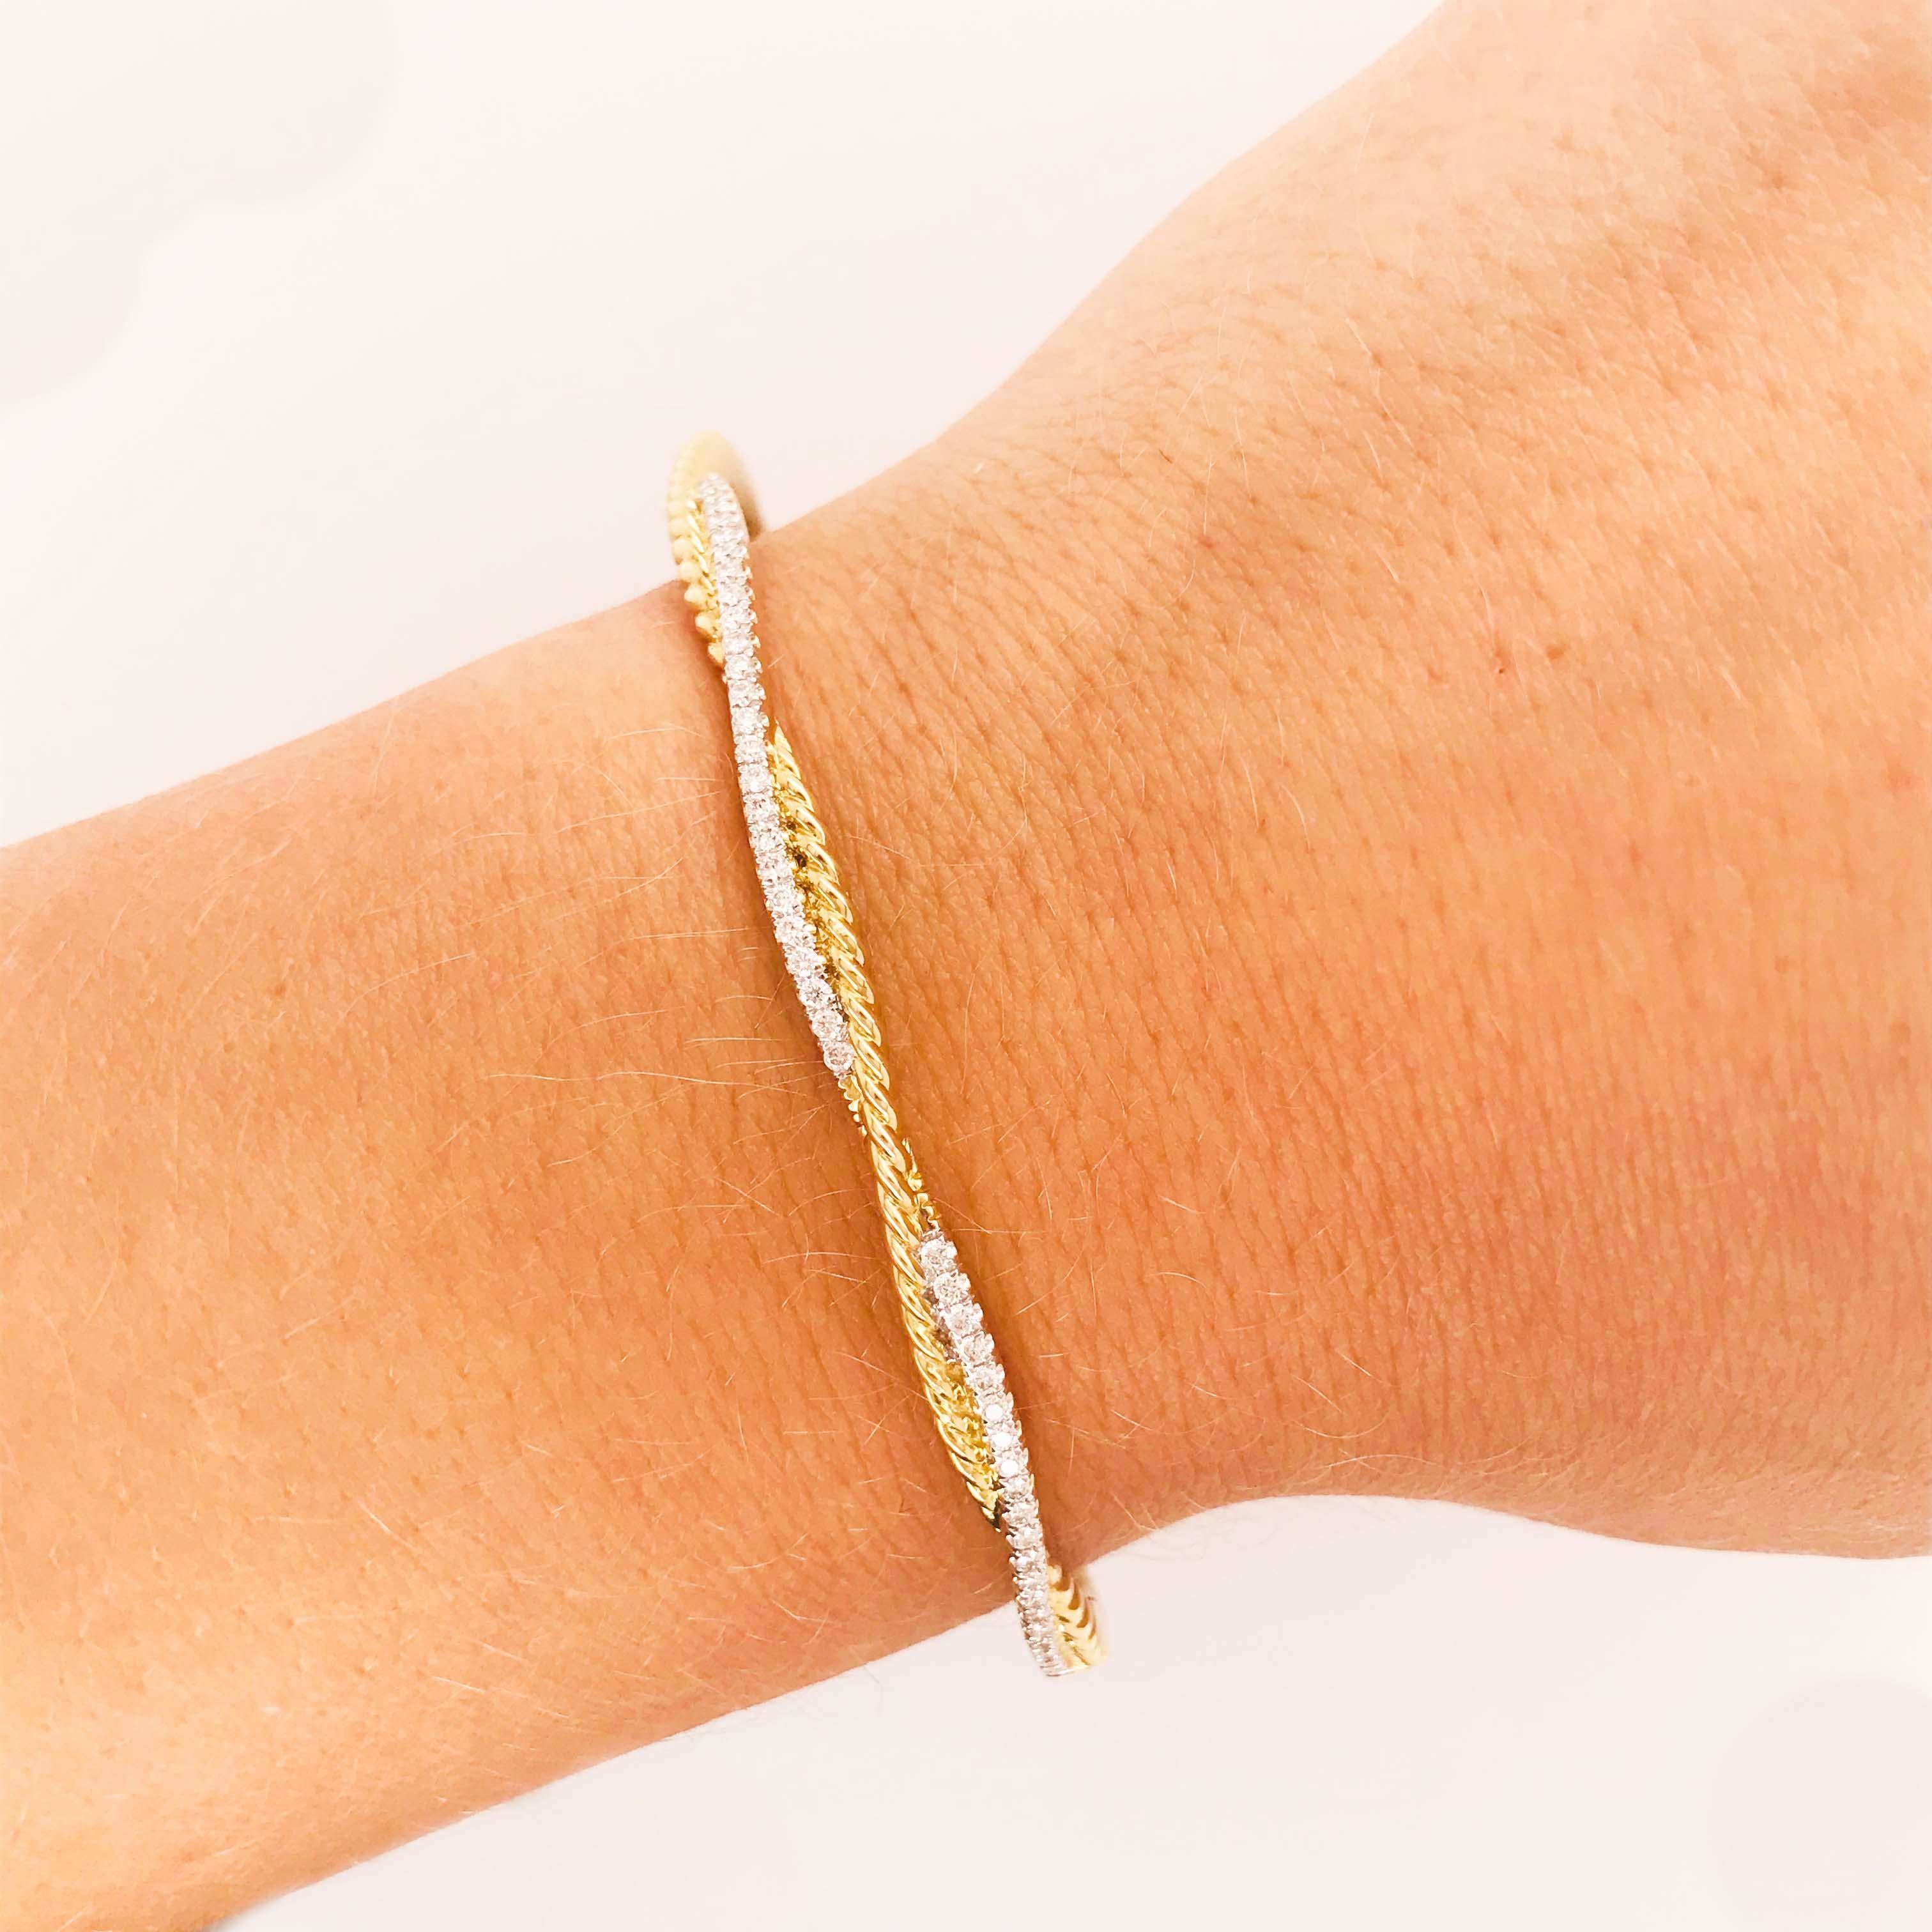 Ce bracelet bangle en diamants est un design torsadé avec un mélange d'or blanc et d'or jaune 14 carats.  Le succulent motif de corde torsadée est superbement associé à un fil d'or blanc orné de diamants tout autour.  Ce bracelet convient à un